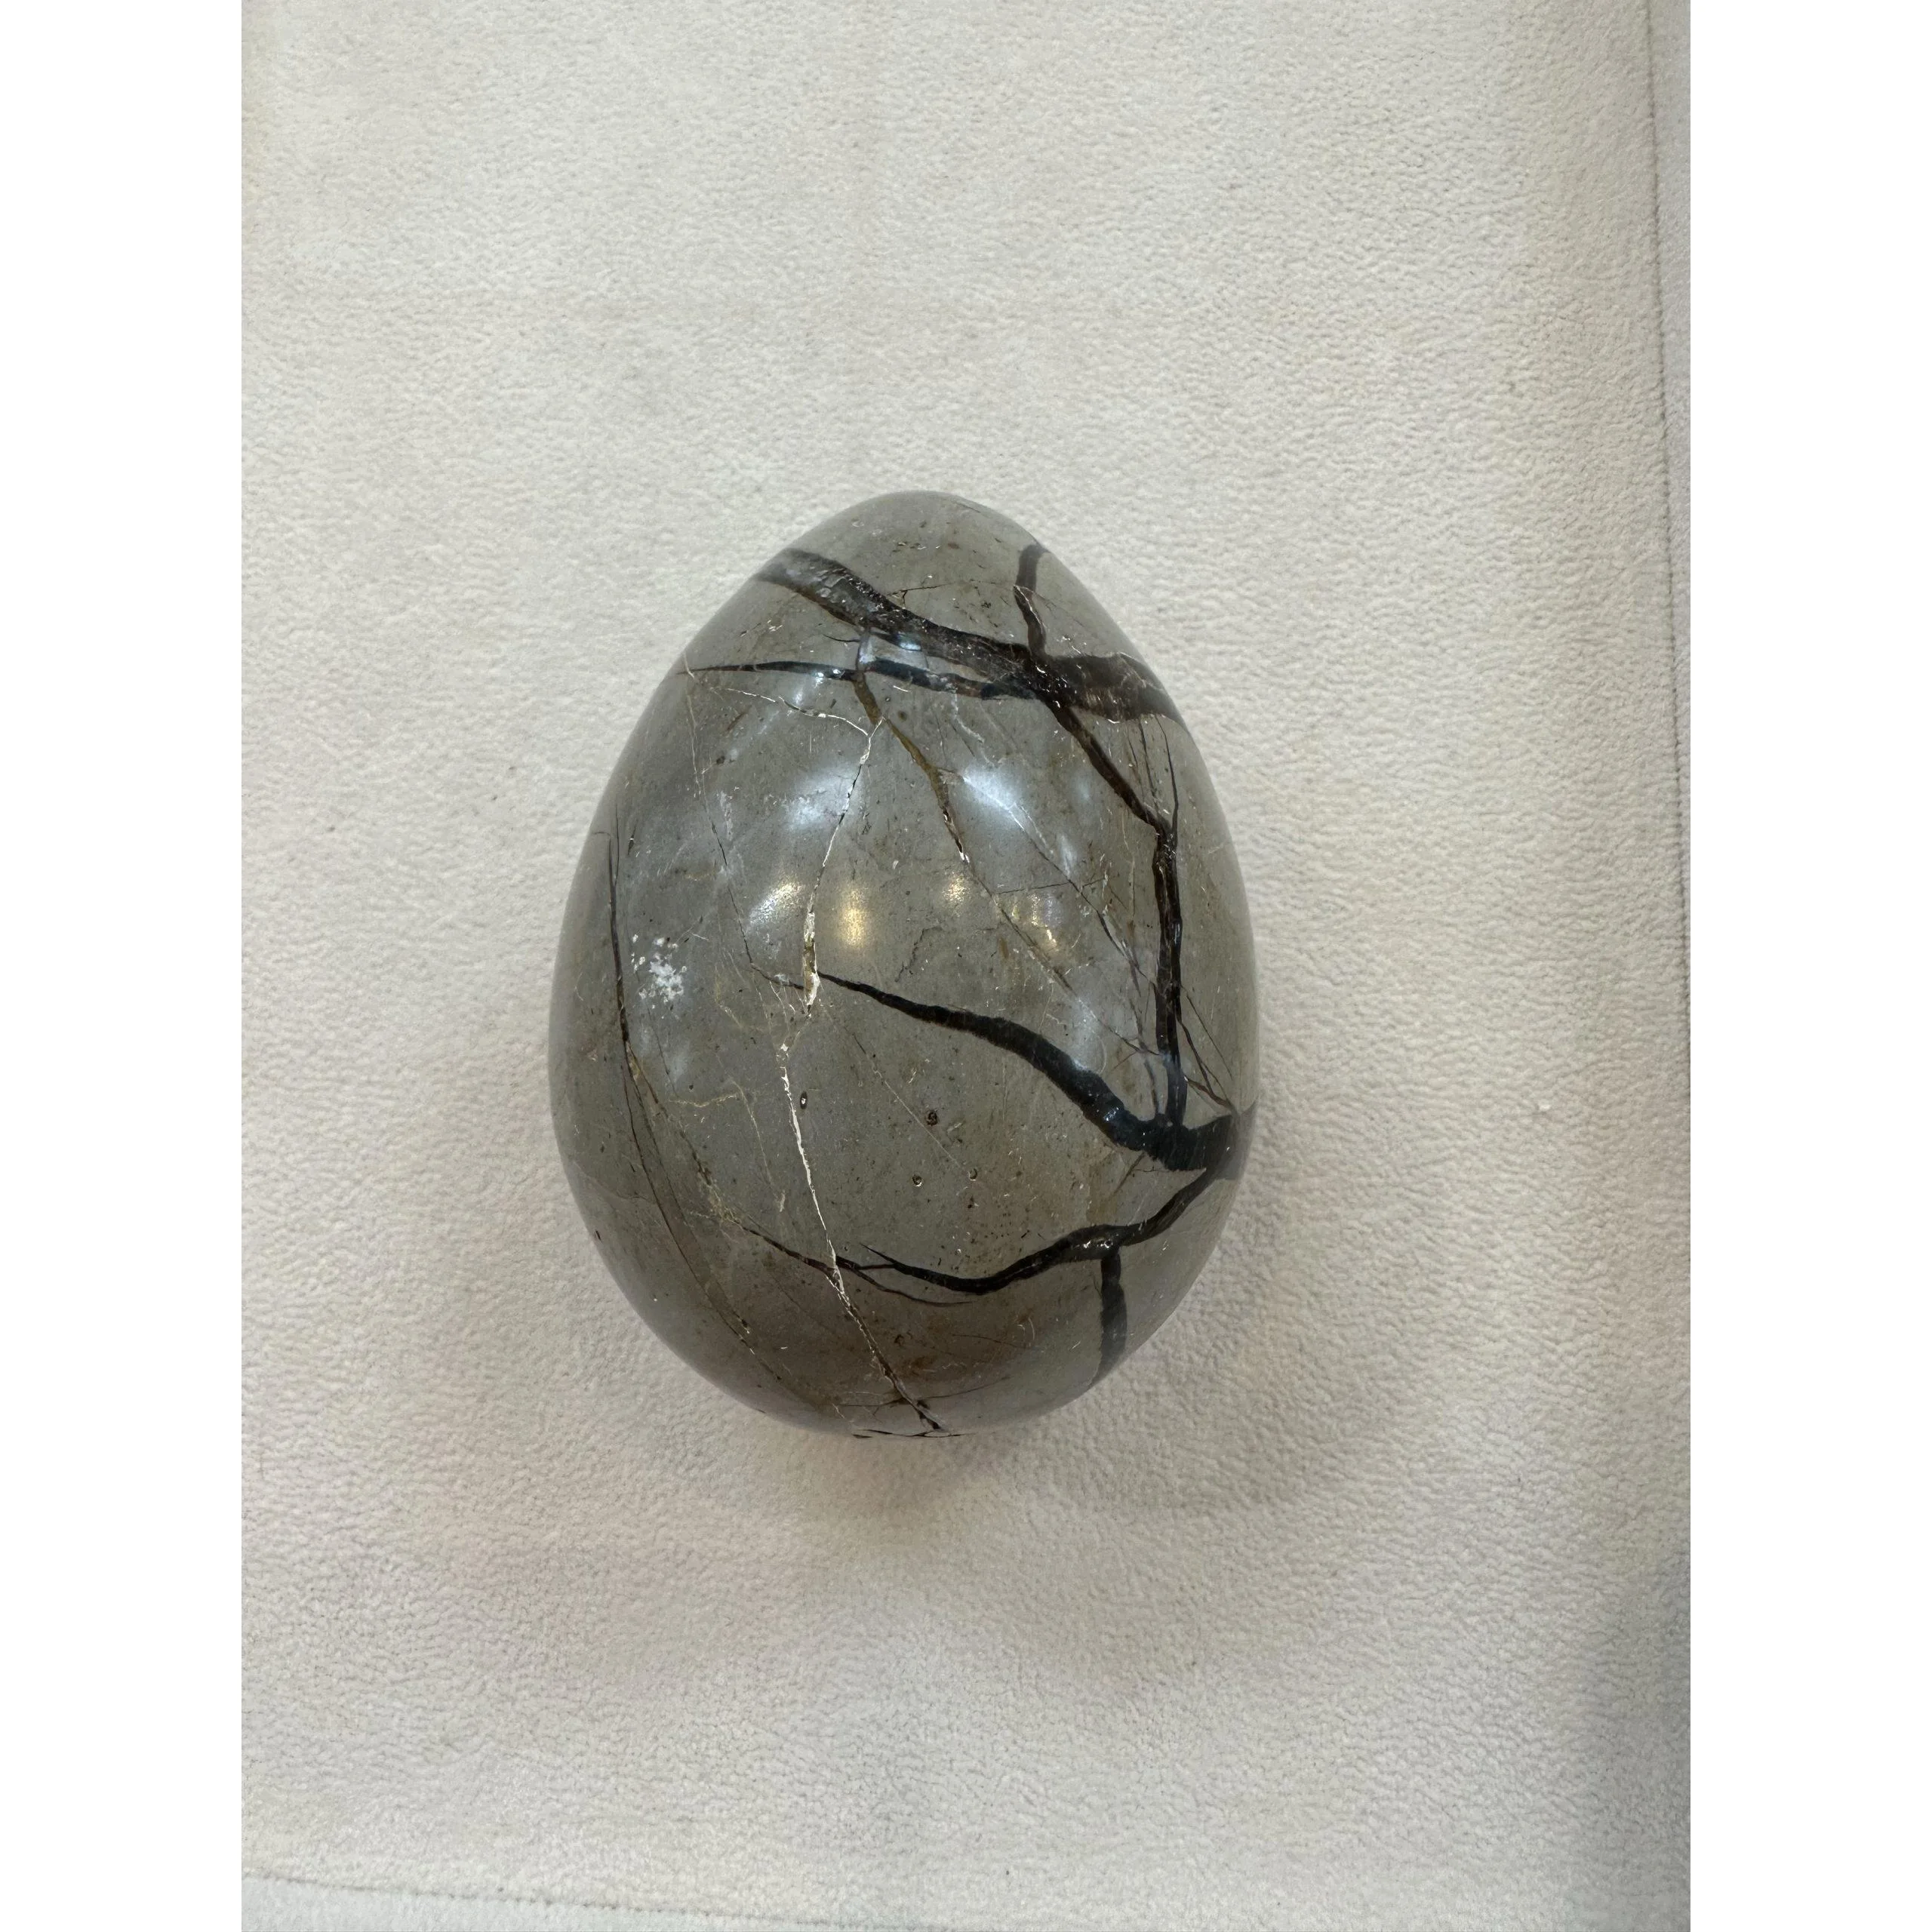 Septarian Dragon Egg –  3 1/2 inch, White calcite Prehistoric Online